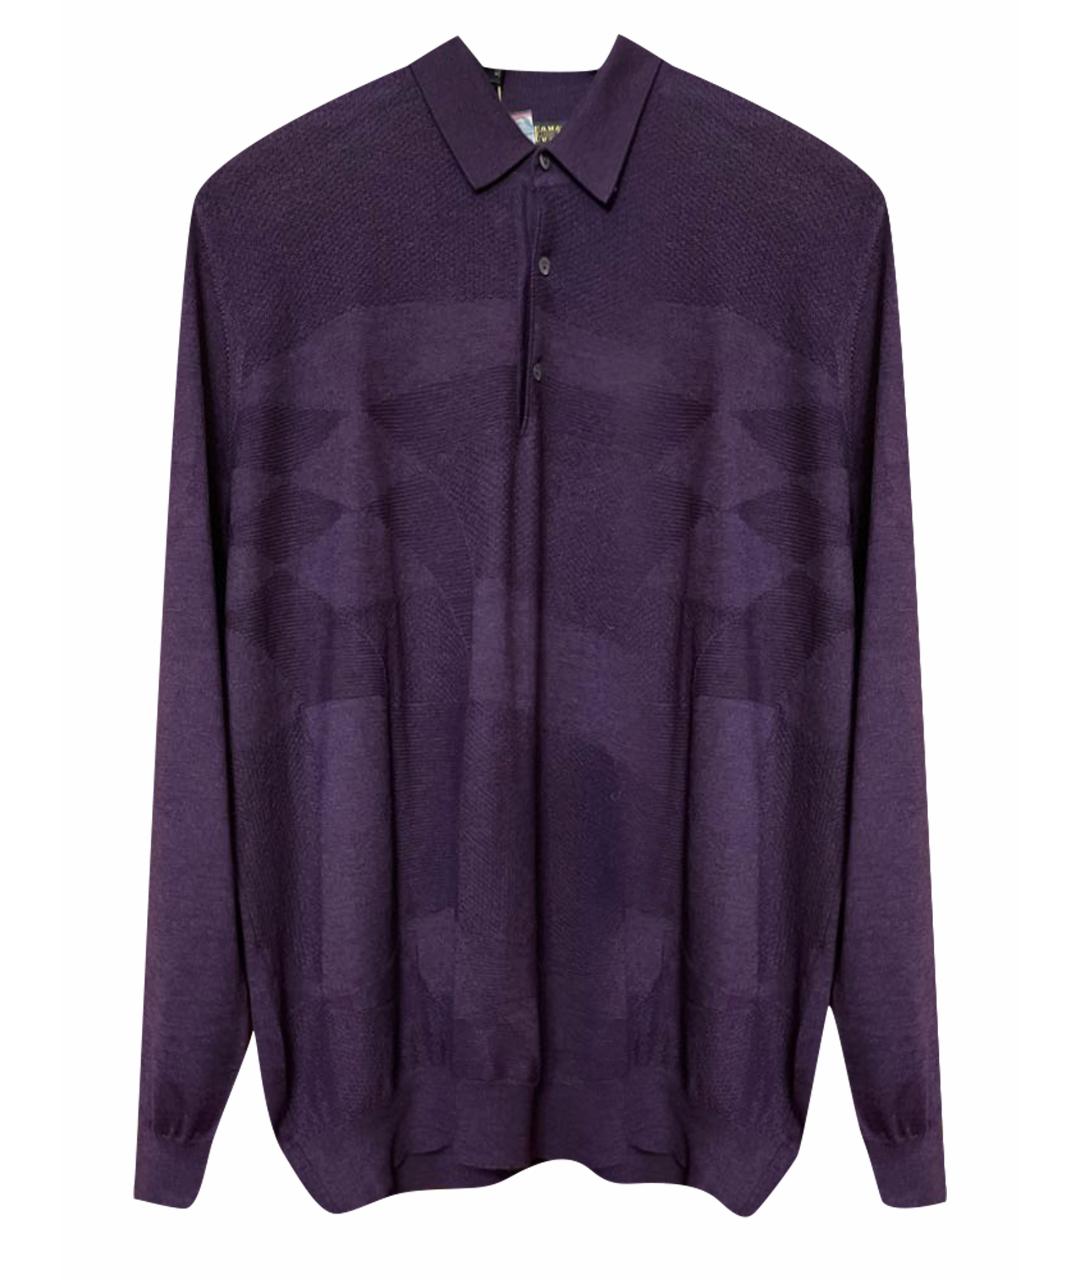 UOMO COLLEZIONI Фиолетовый кашемировый джемпер / свитер, фото 1